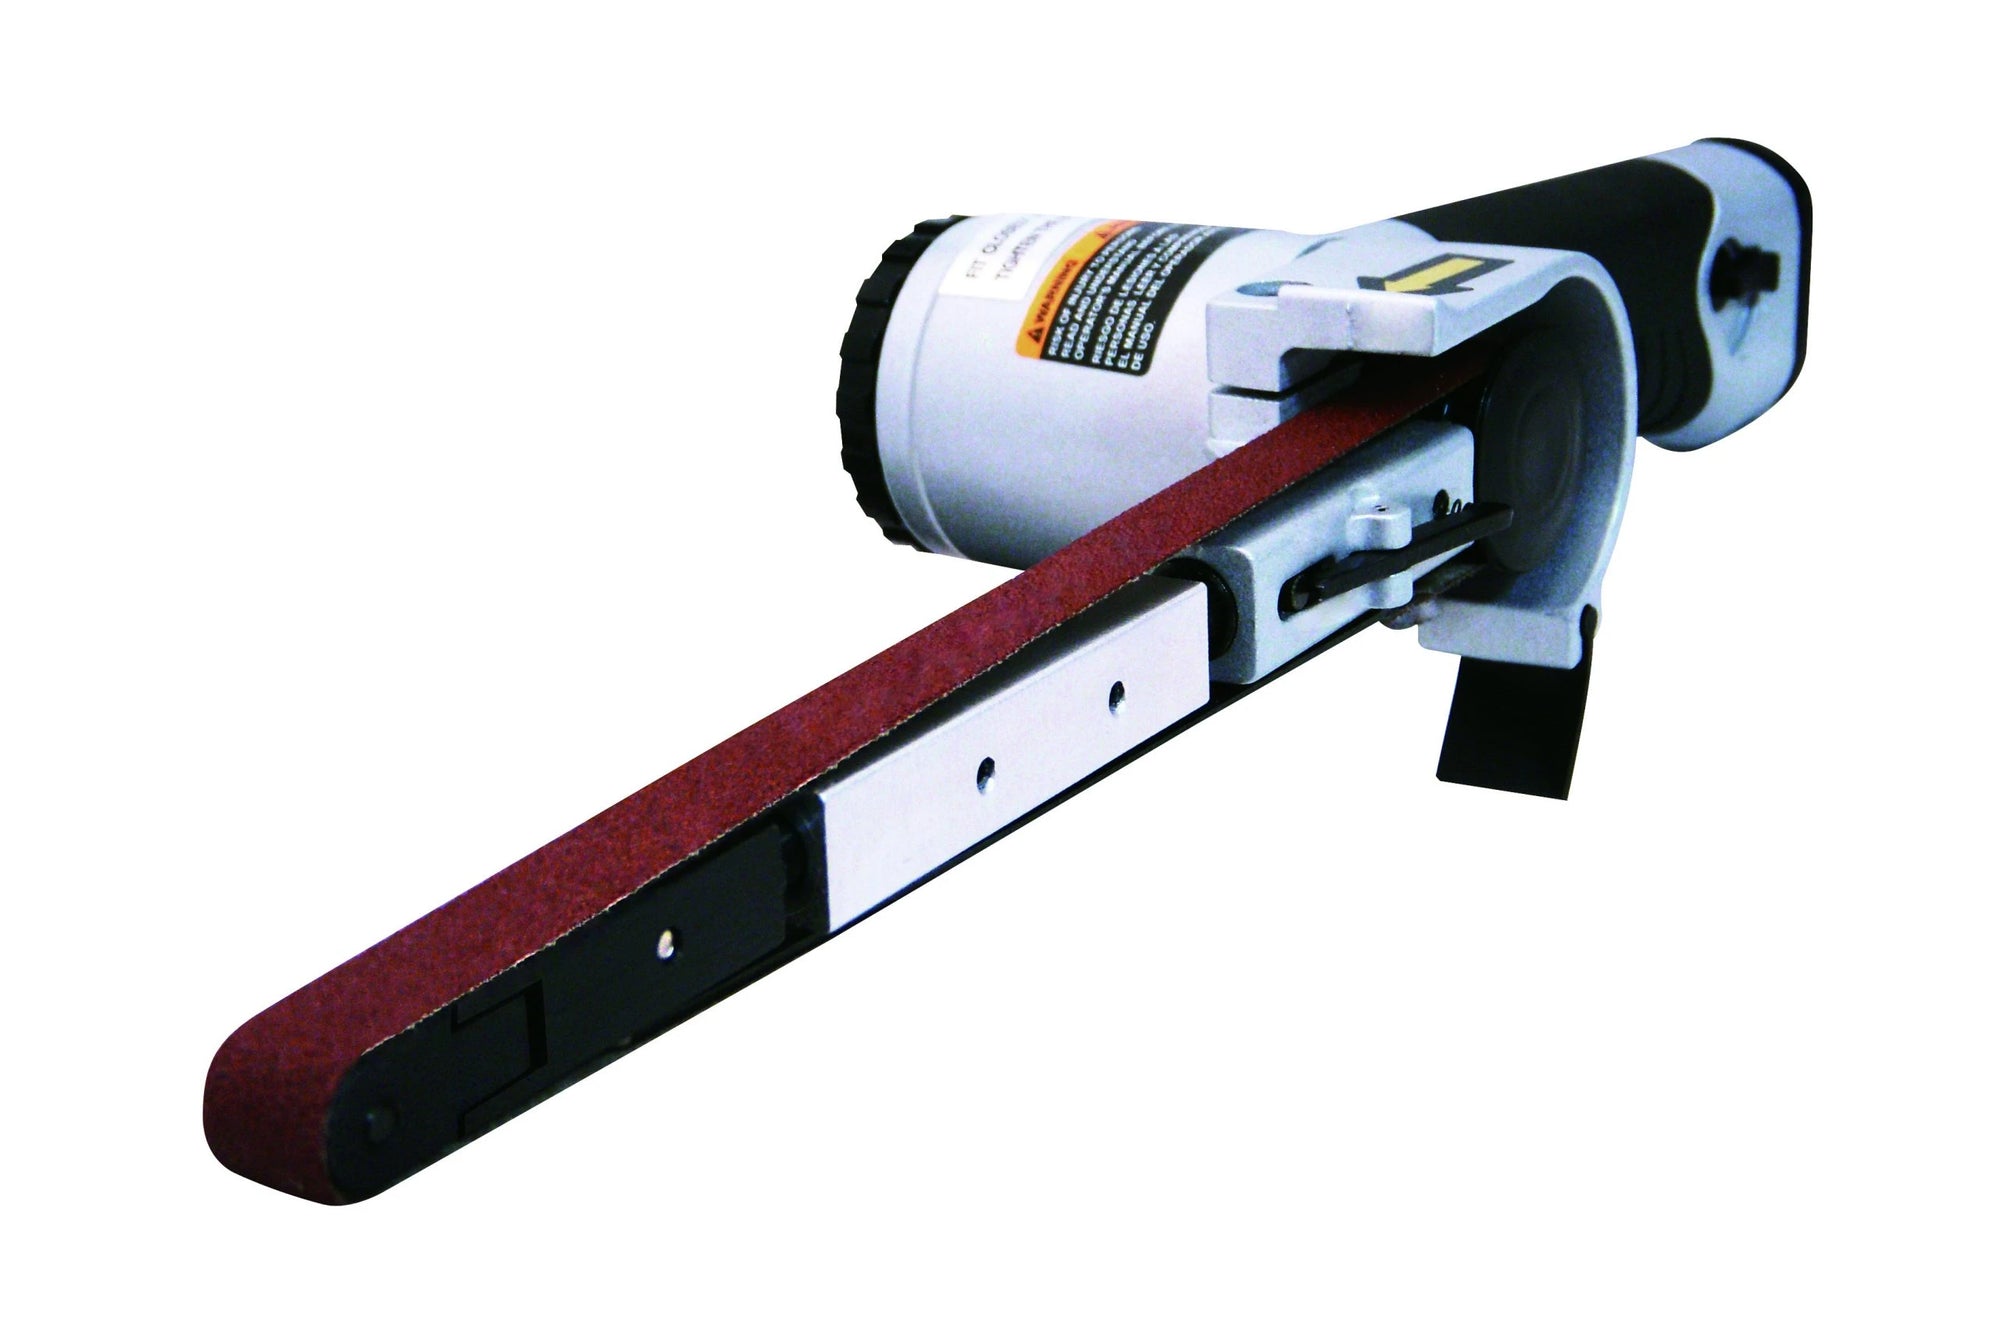 ASTRO PNEUMATIC Air Belt Sander 1/2" Wide Belt AO3037 - Direct Tool Source